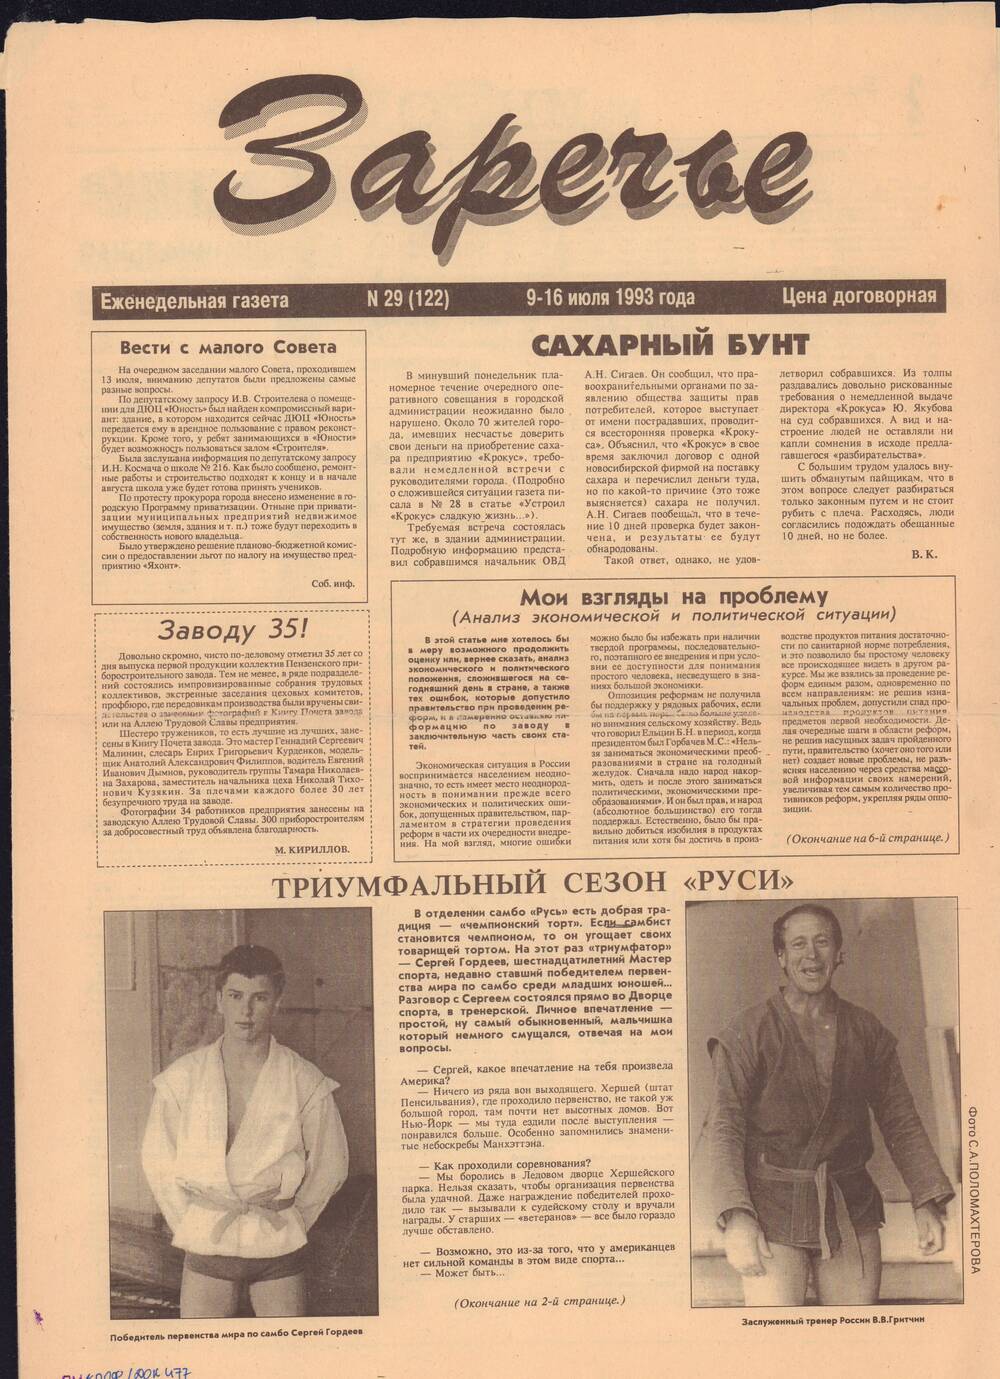 Газета Заречье №29 от 9.16.1993 г. со статьёй Триумфальный сезон Руси.